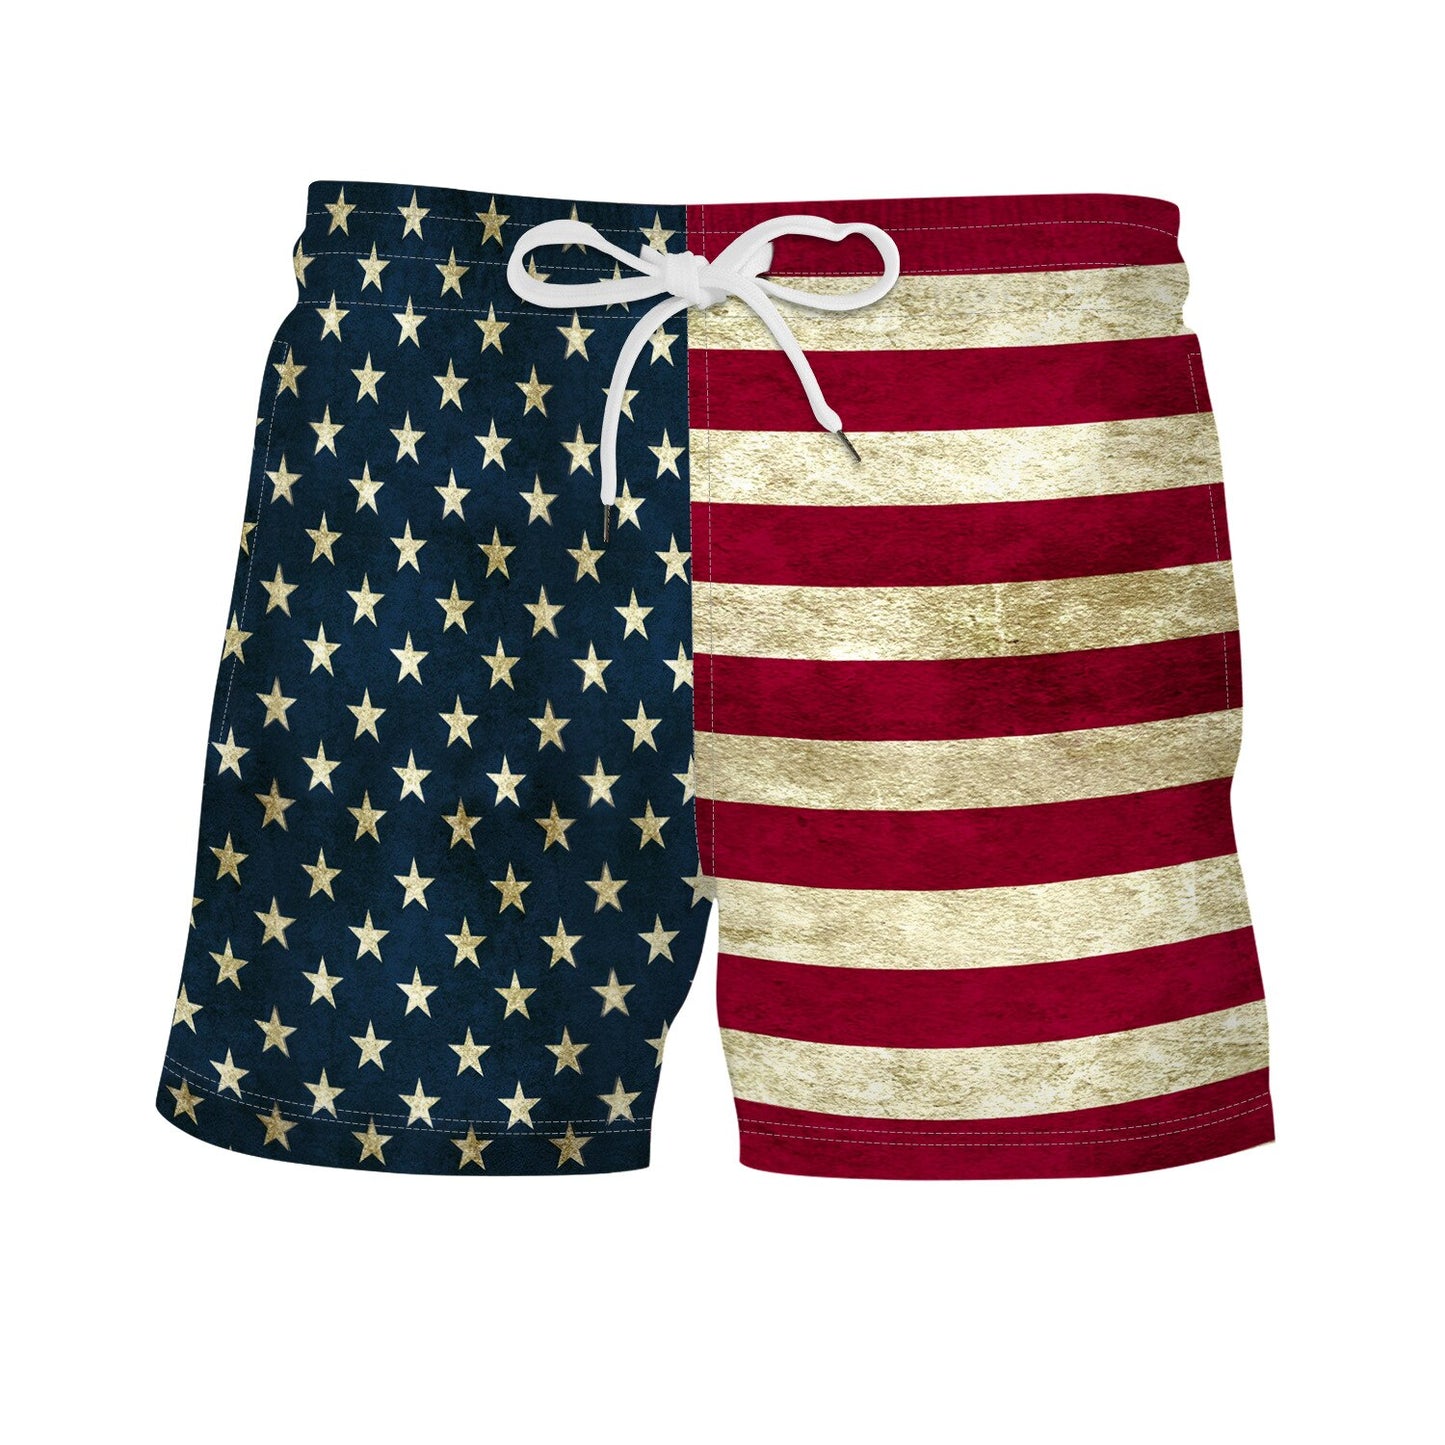 USA Flag Printed Board Shorts